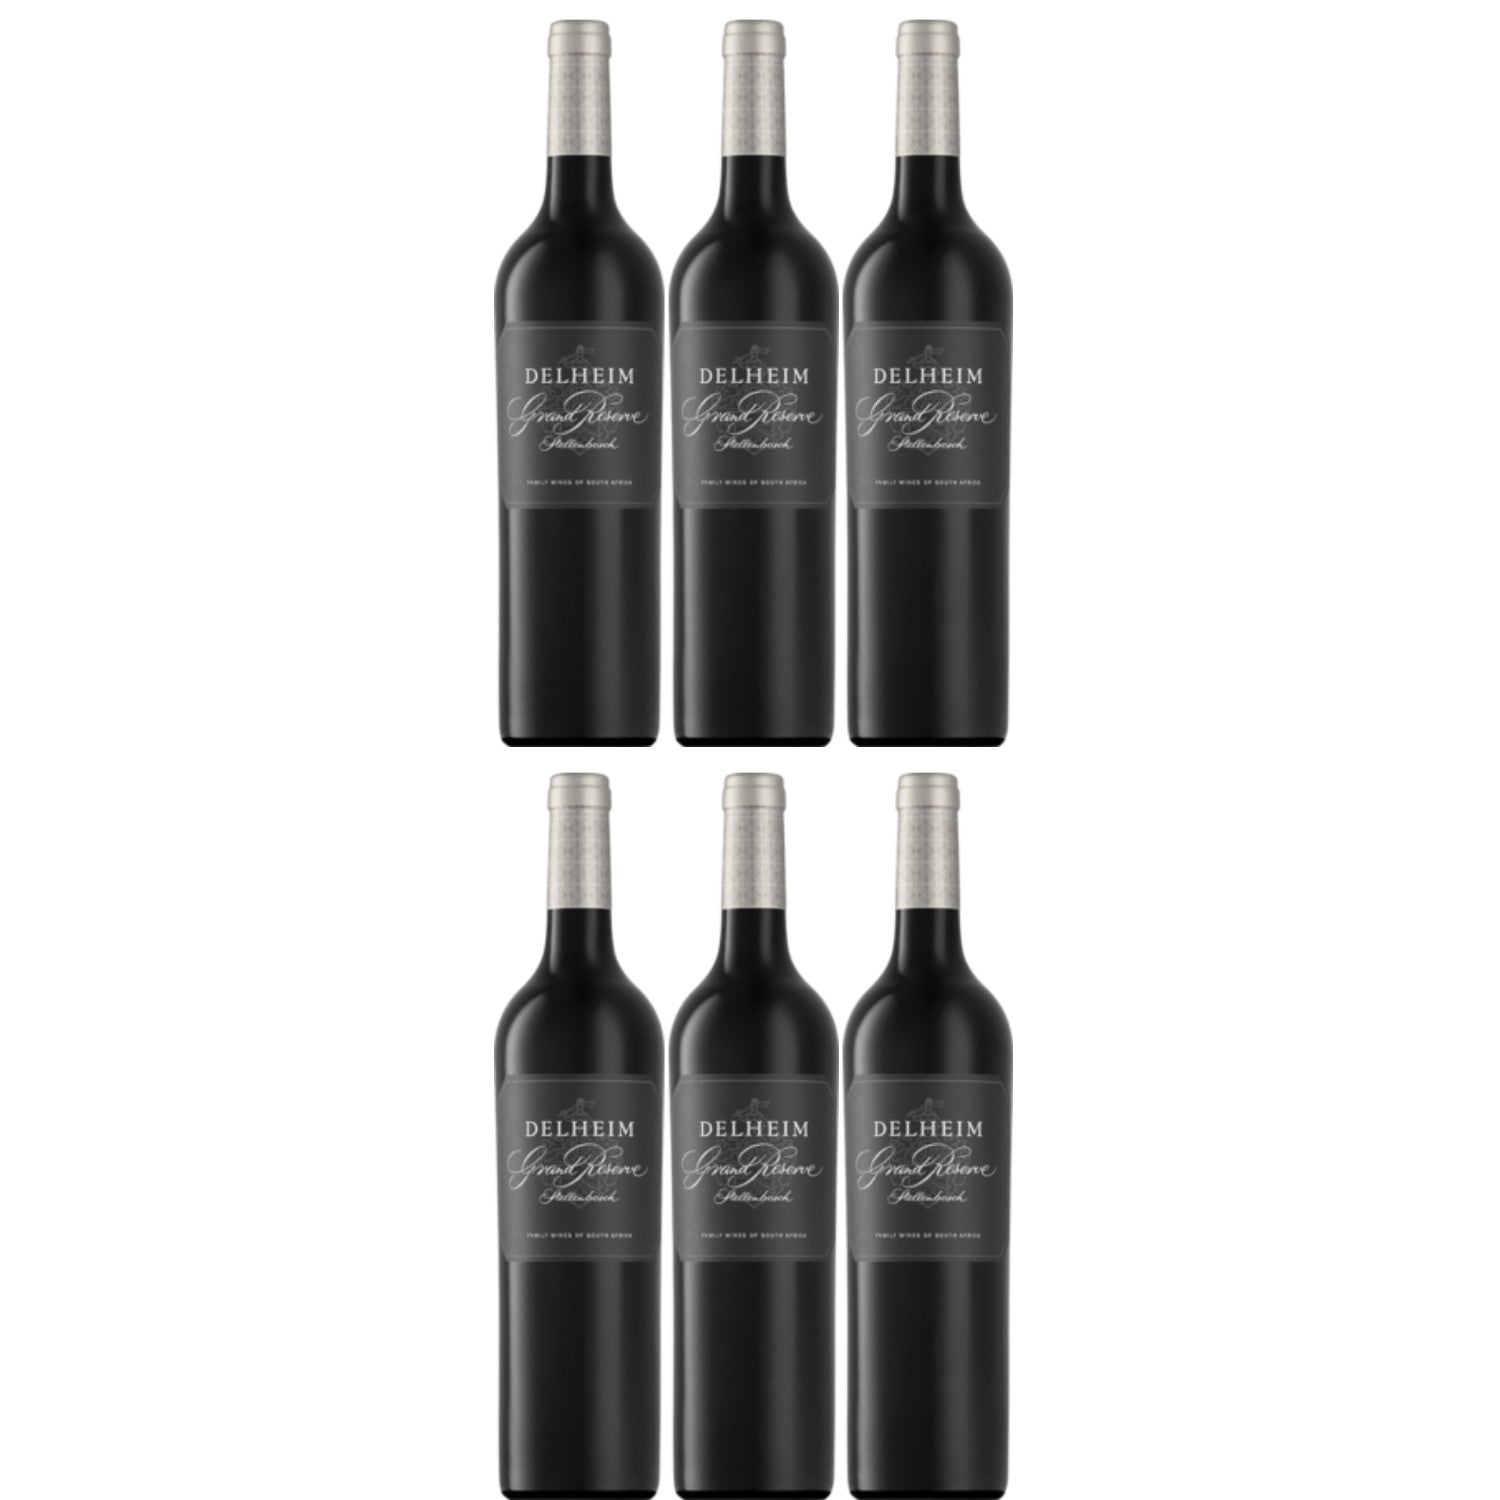 Delheim Grand Reserve Cabernet Sauvignon Stellenbosch Rotwein Wein trocken Südafrika (6 x 0.75l) - Versanel -